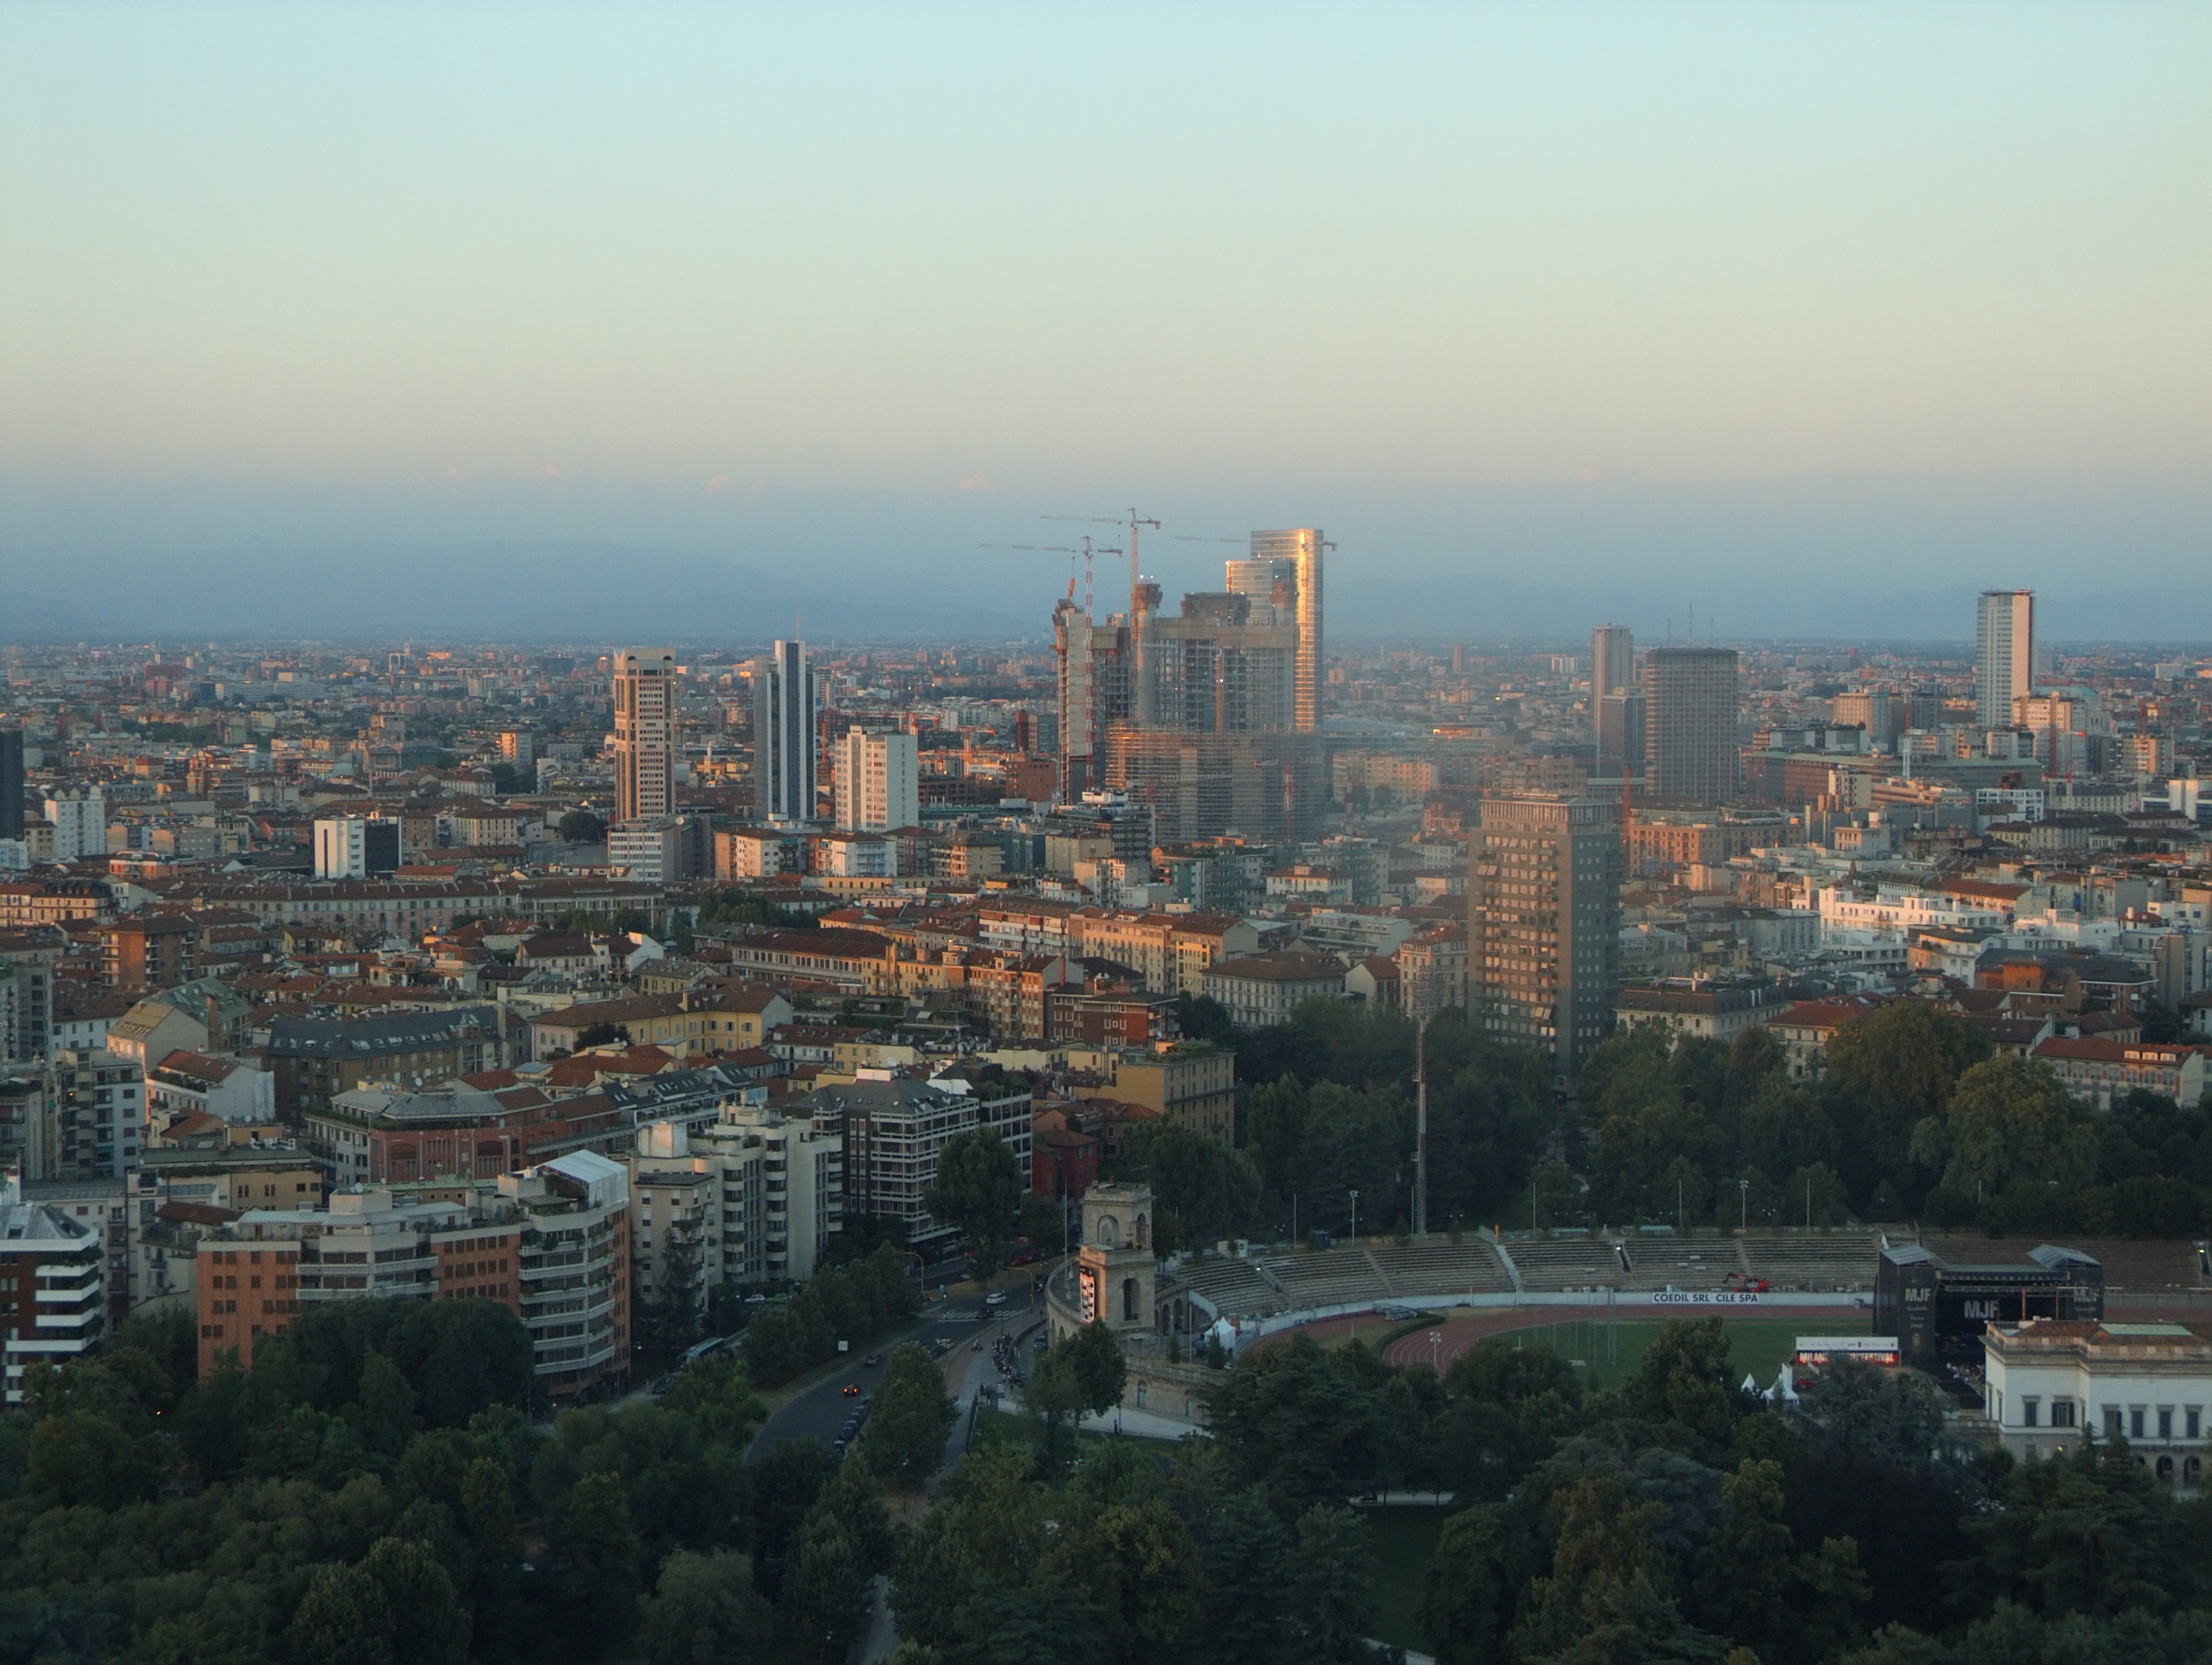 Milano: Milano al tramonto vista dalla Torre Branca, direzione ca. nord est - Milano